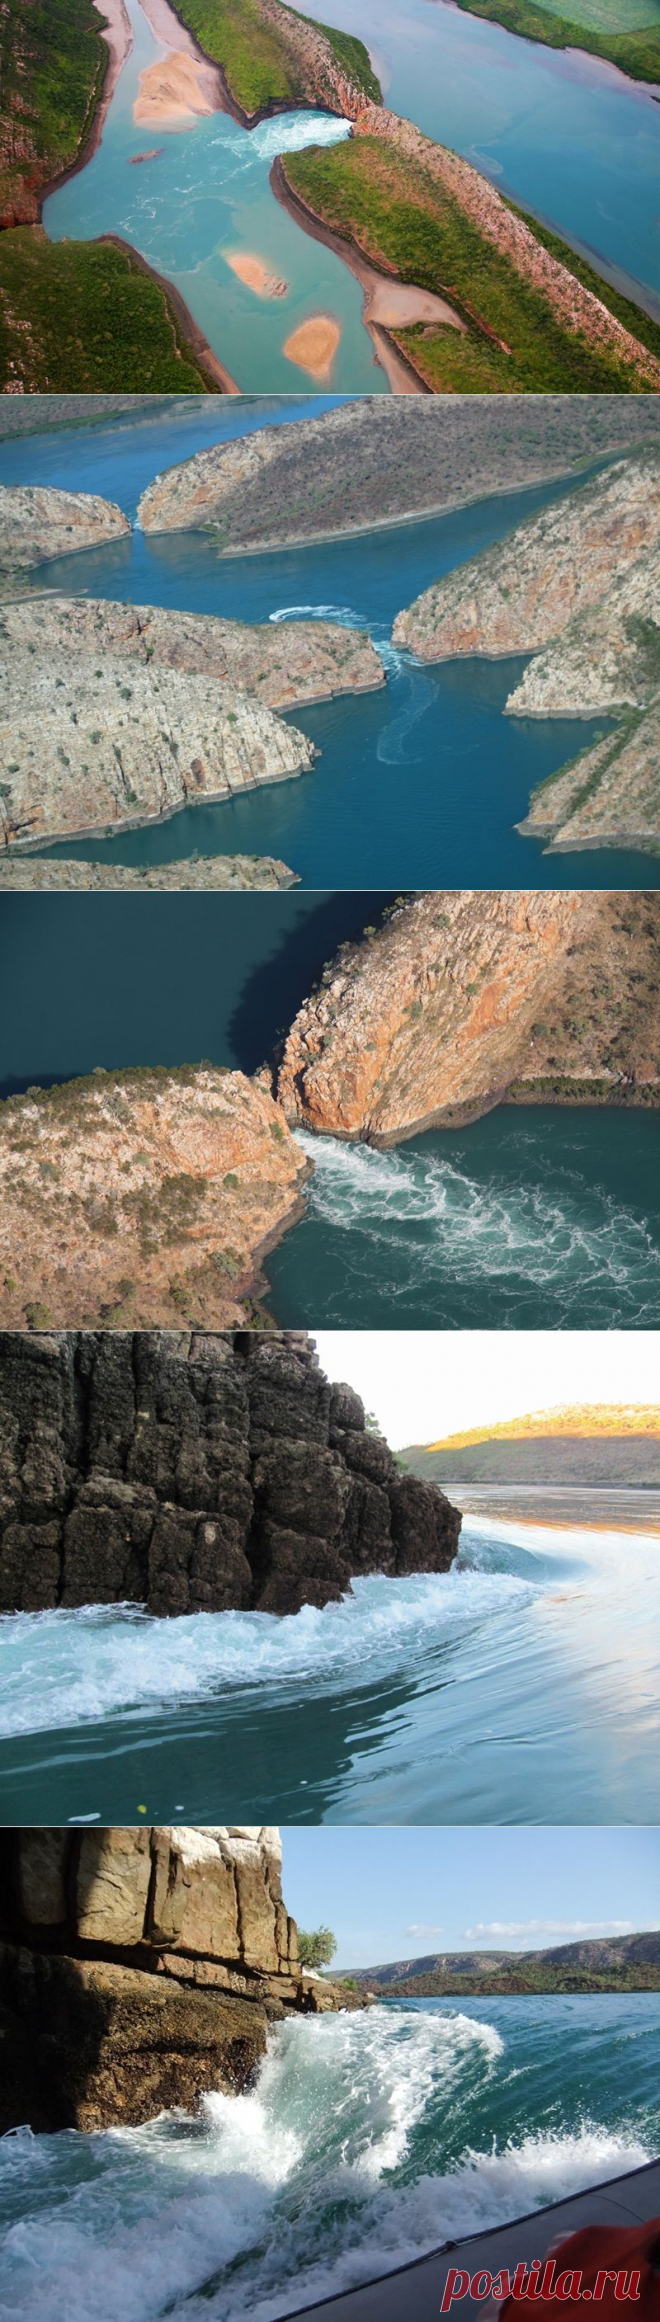 Горизонтальные водопады бухты Талбот | В мире интересного